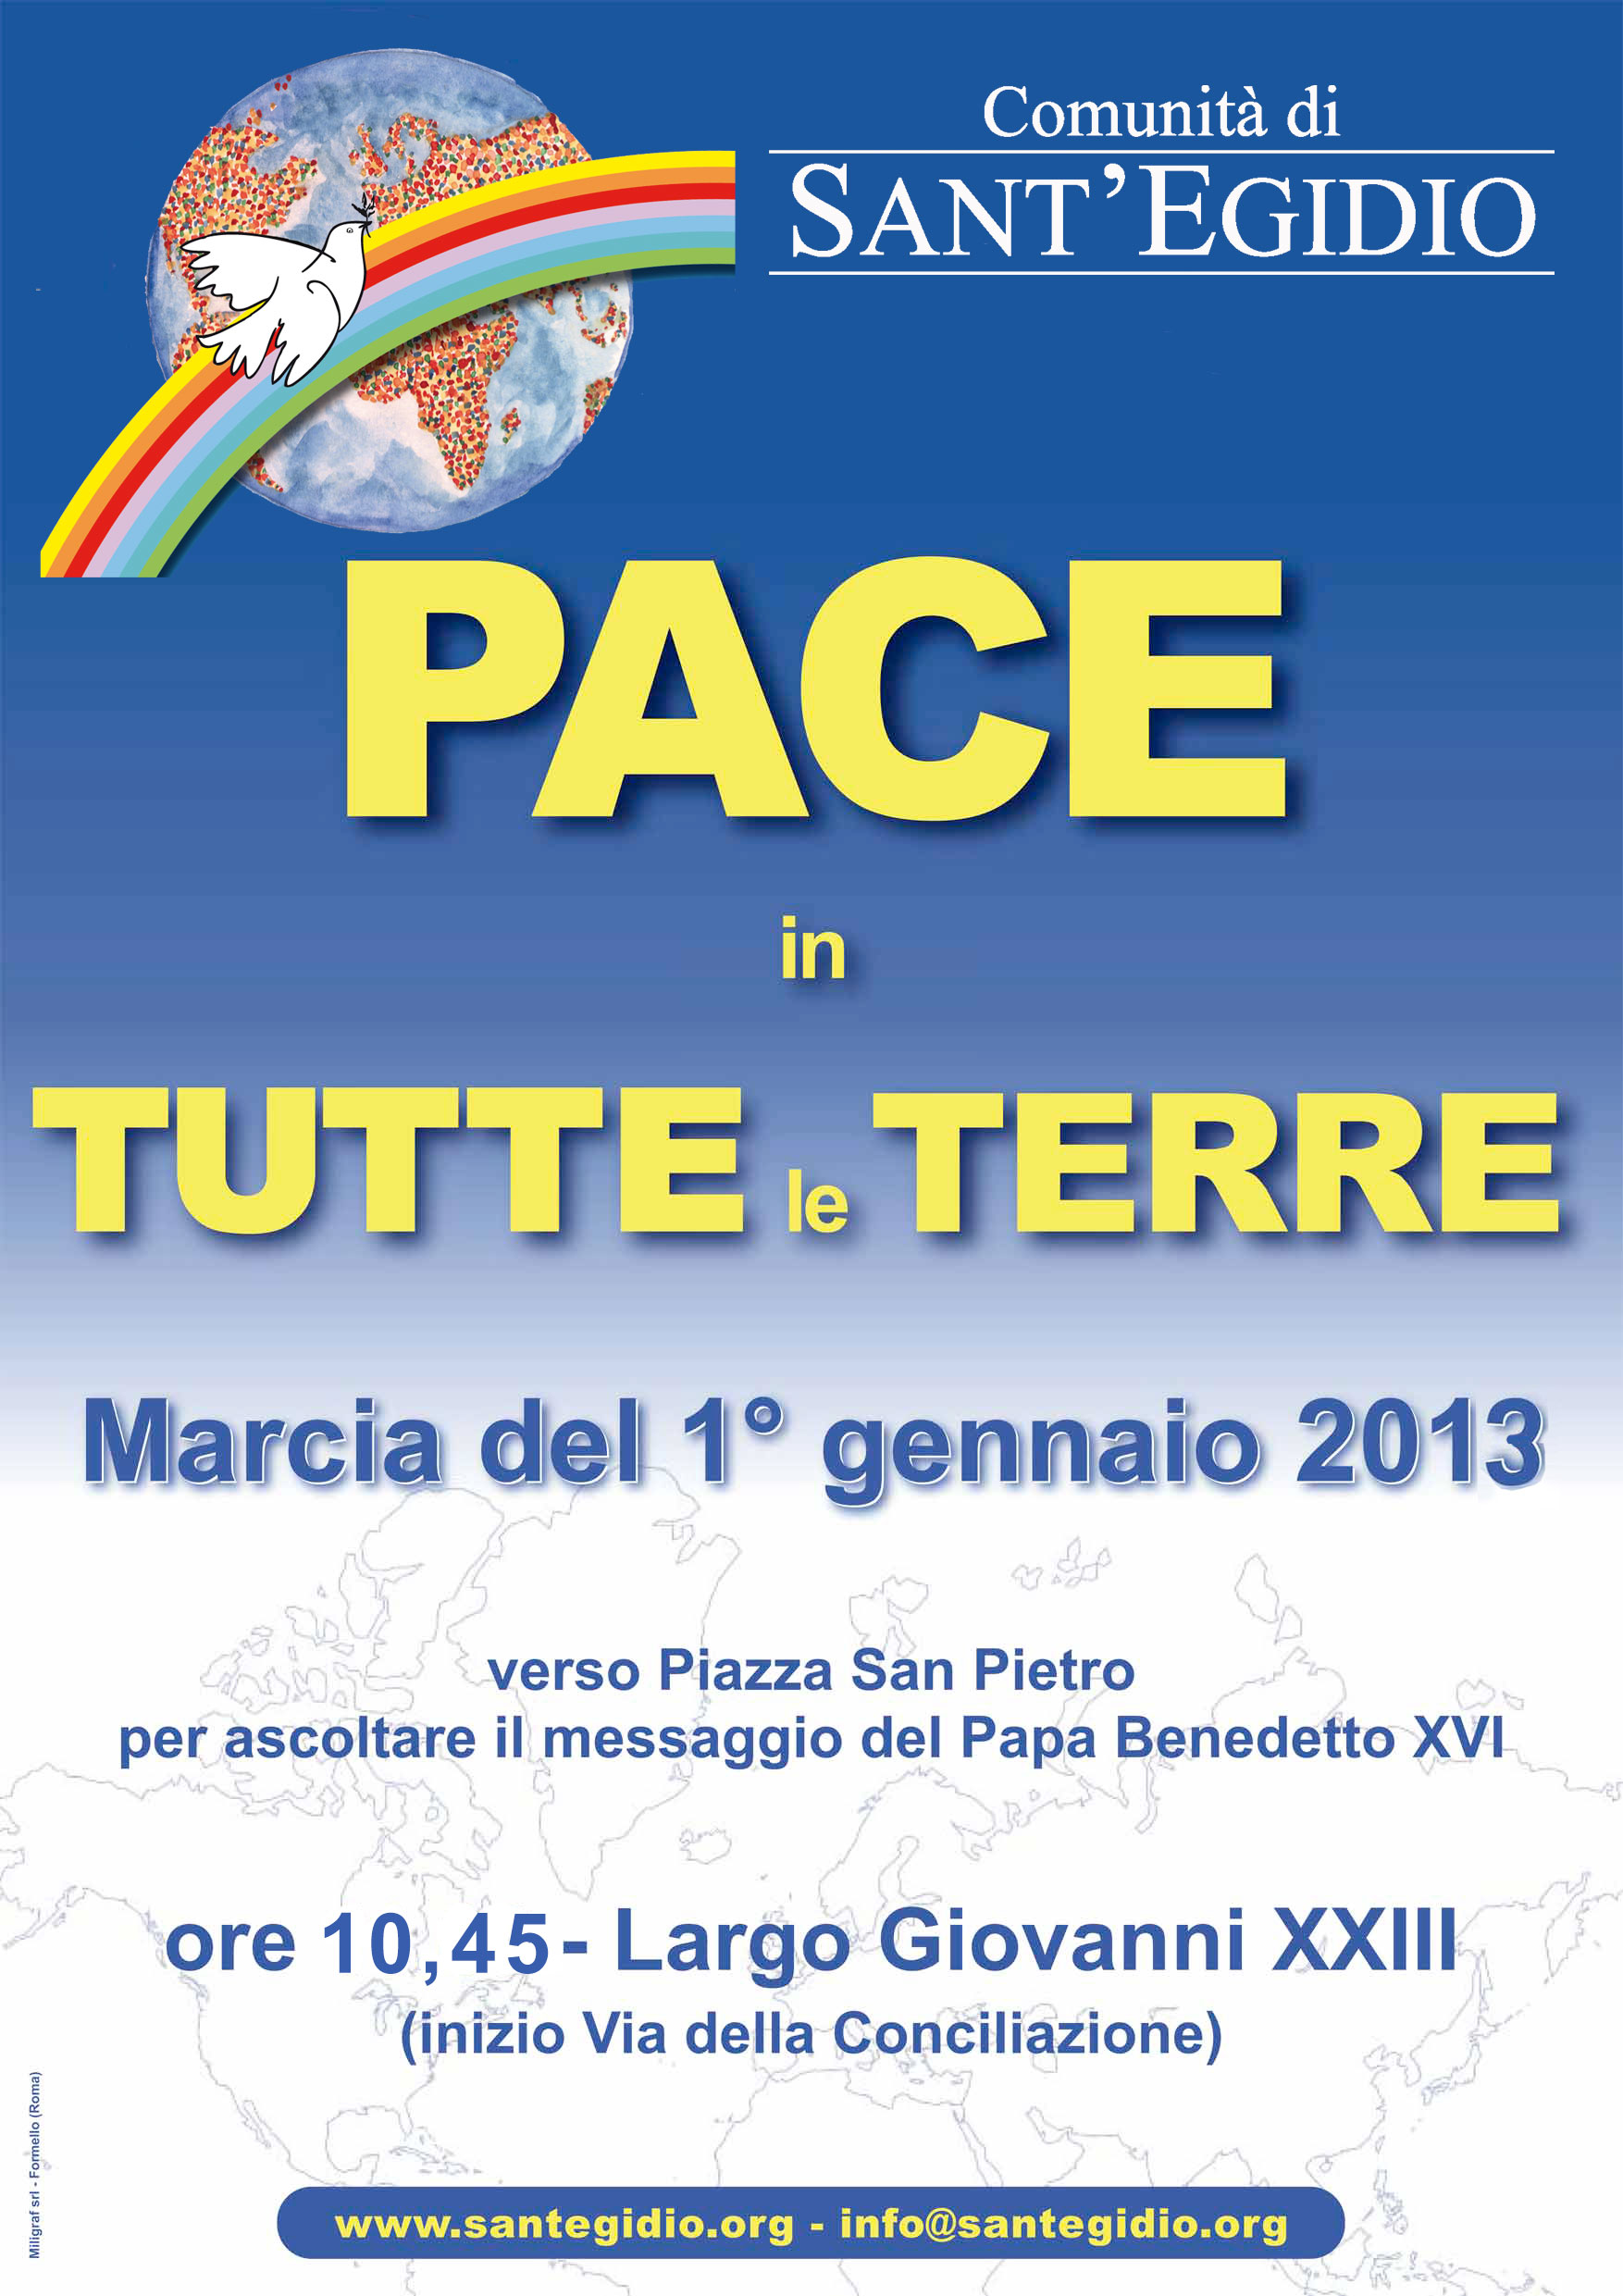 Pace in tutte le terre - 1 gennaio 2013 Comunità di Sant'Egidio